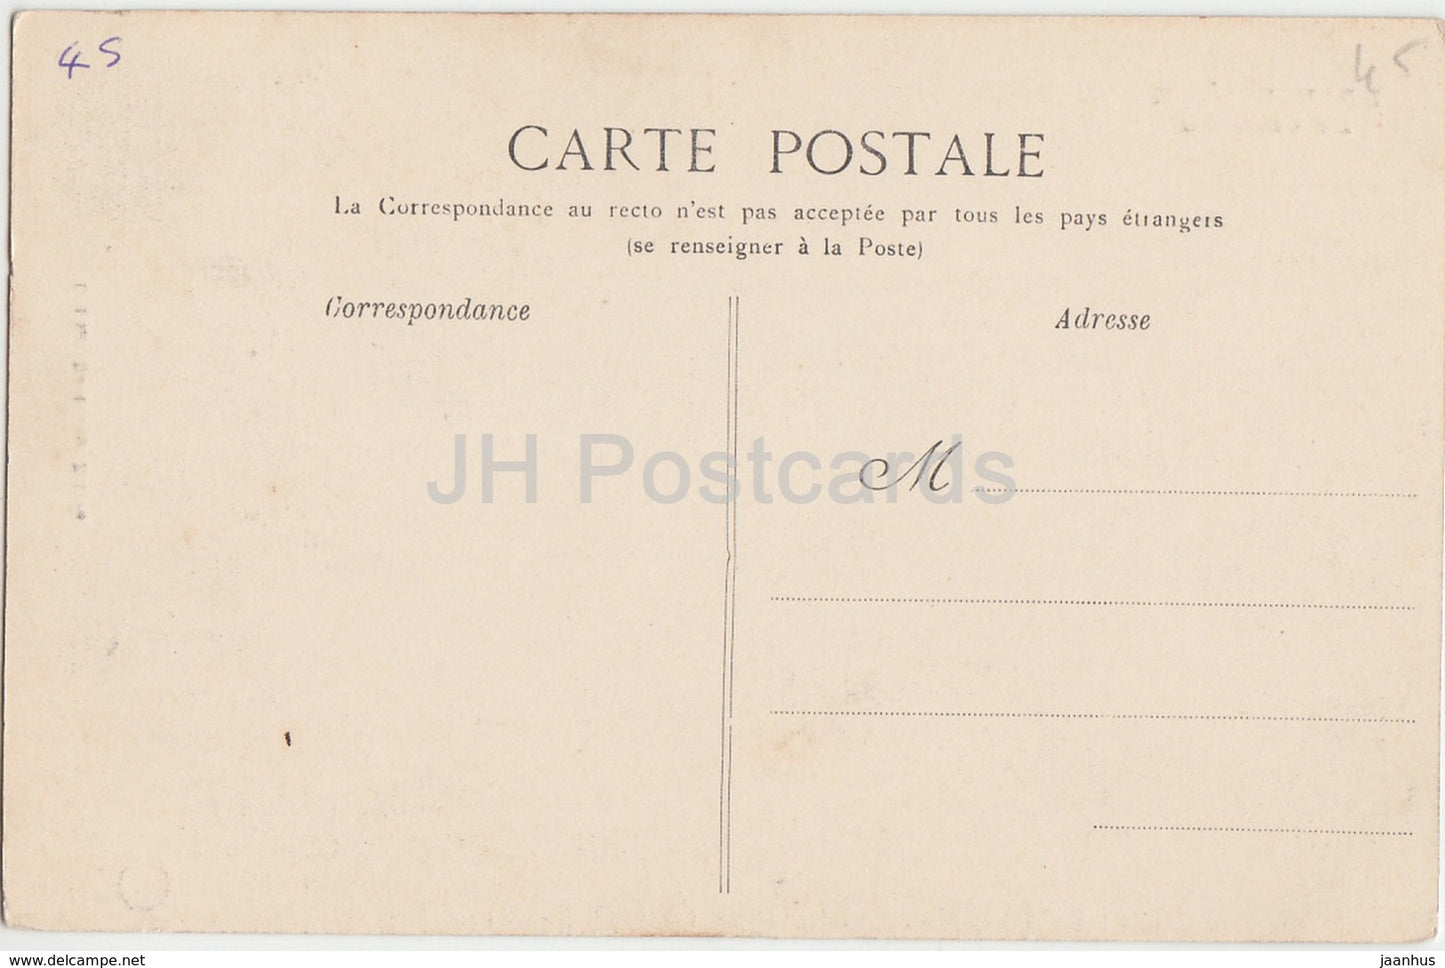 La Bussiere - Le Chateau - castle - old postcard - France - unused